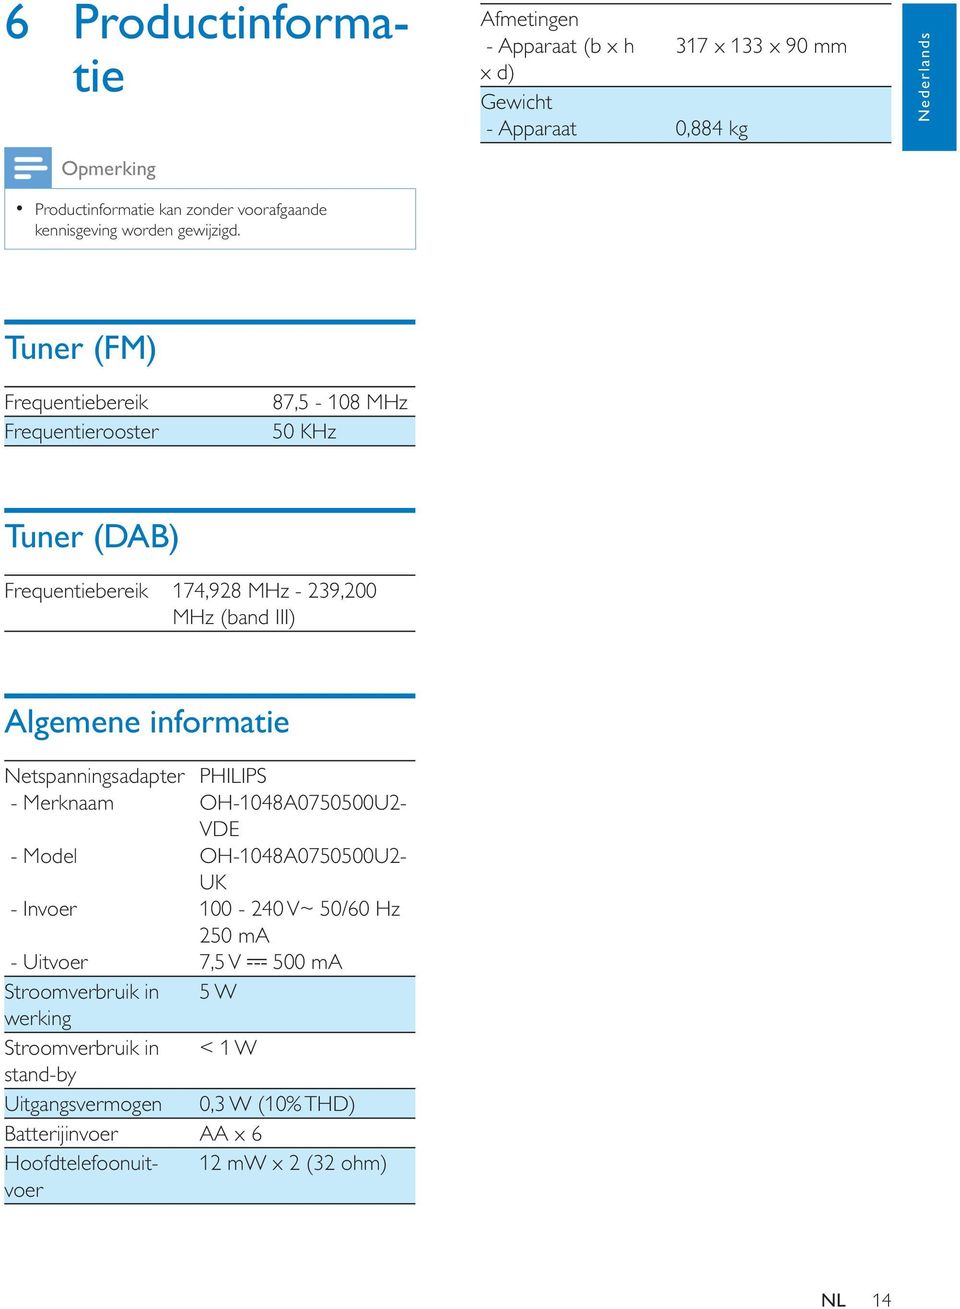 Tuner (FM) Frequentiebereik Frequentierooster 87,5-108 MHz 50 KHz Tuner (DAB) Frequentiebereik 174,928 MHz - 239,200 MHz (band III) Algemene informatie